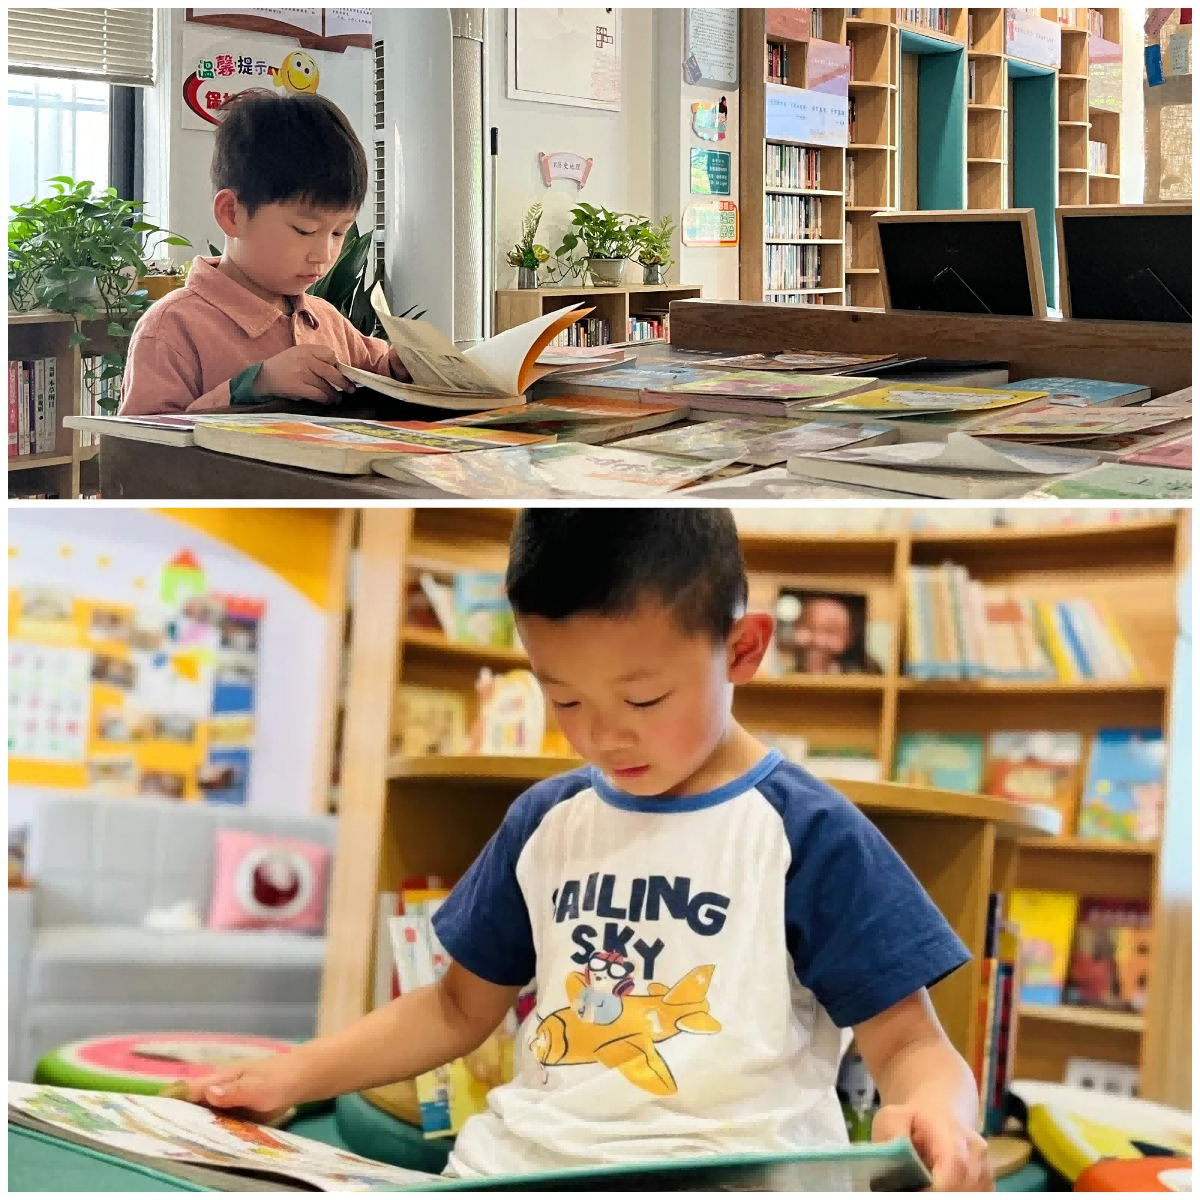 成都市温江区永宁幼儿园举办4月读书月系列活动